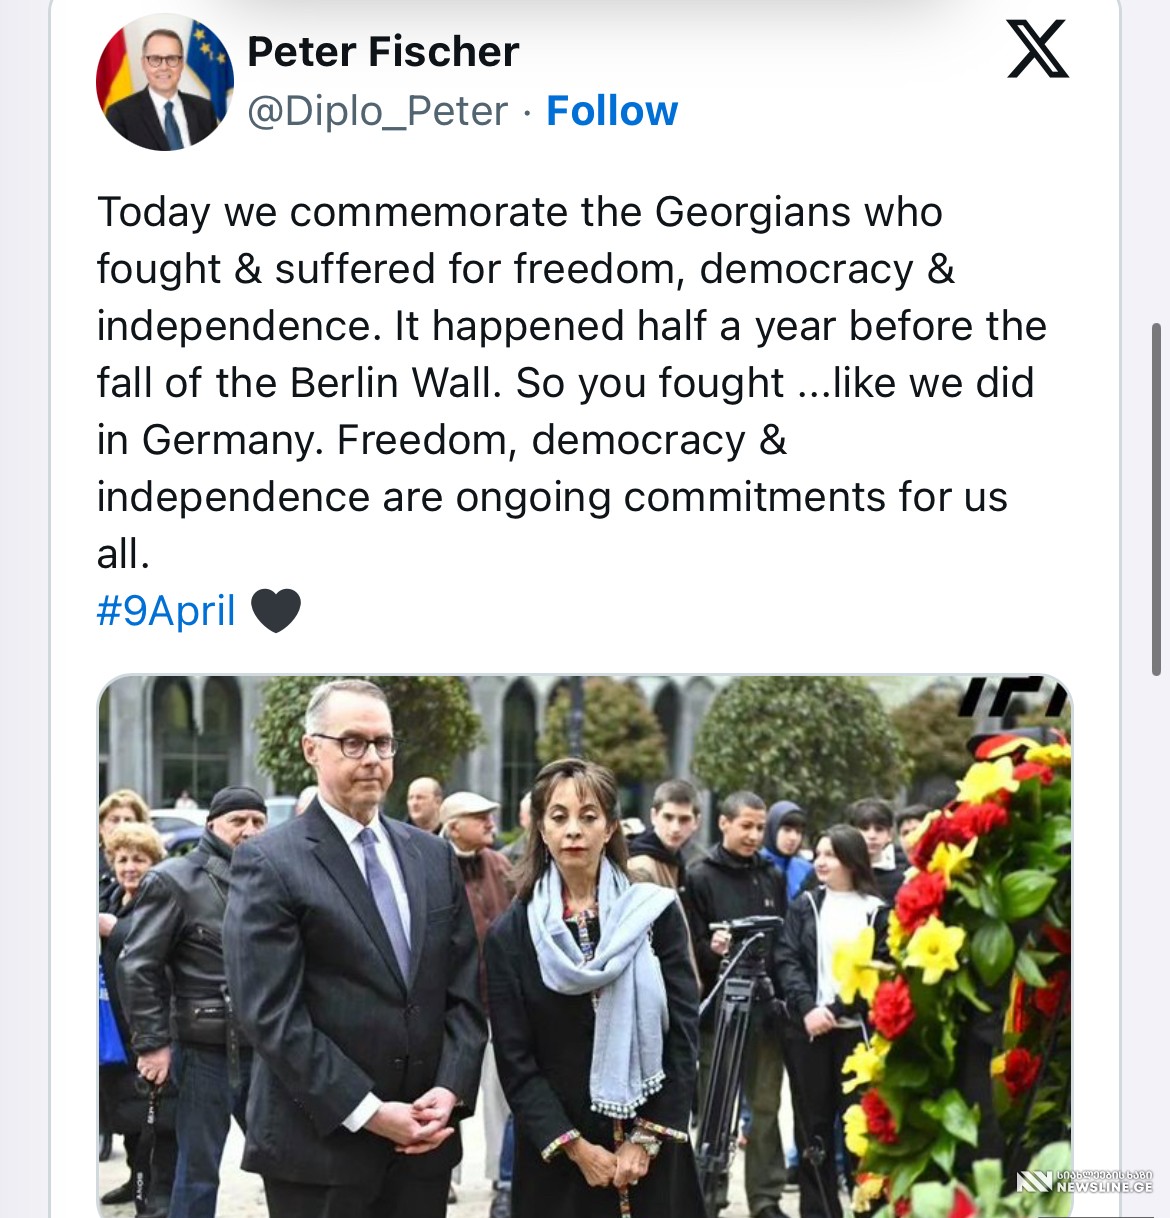 “დღეს პატივს მივაგებთ ქართველებს, რომლებიც იბრძოდნენ თავისუფლებისთვის, დემოკრატიისა და დამოუკიდებლობისთვის” - პეტერ ფიშერის განცხადება